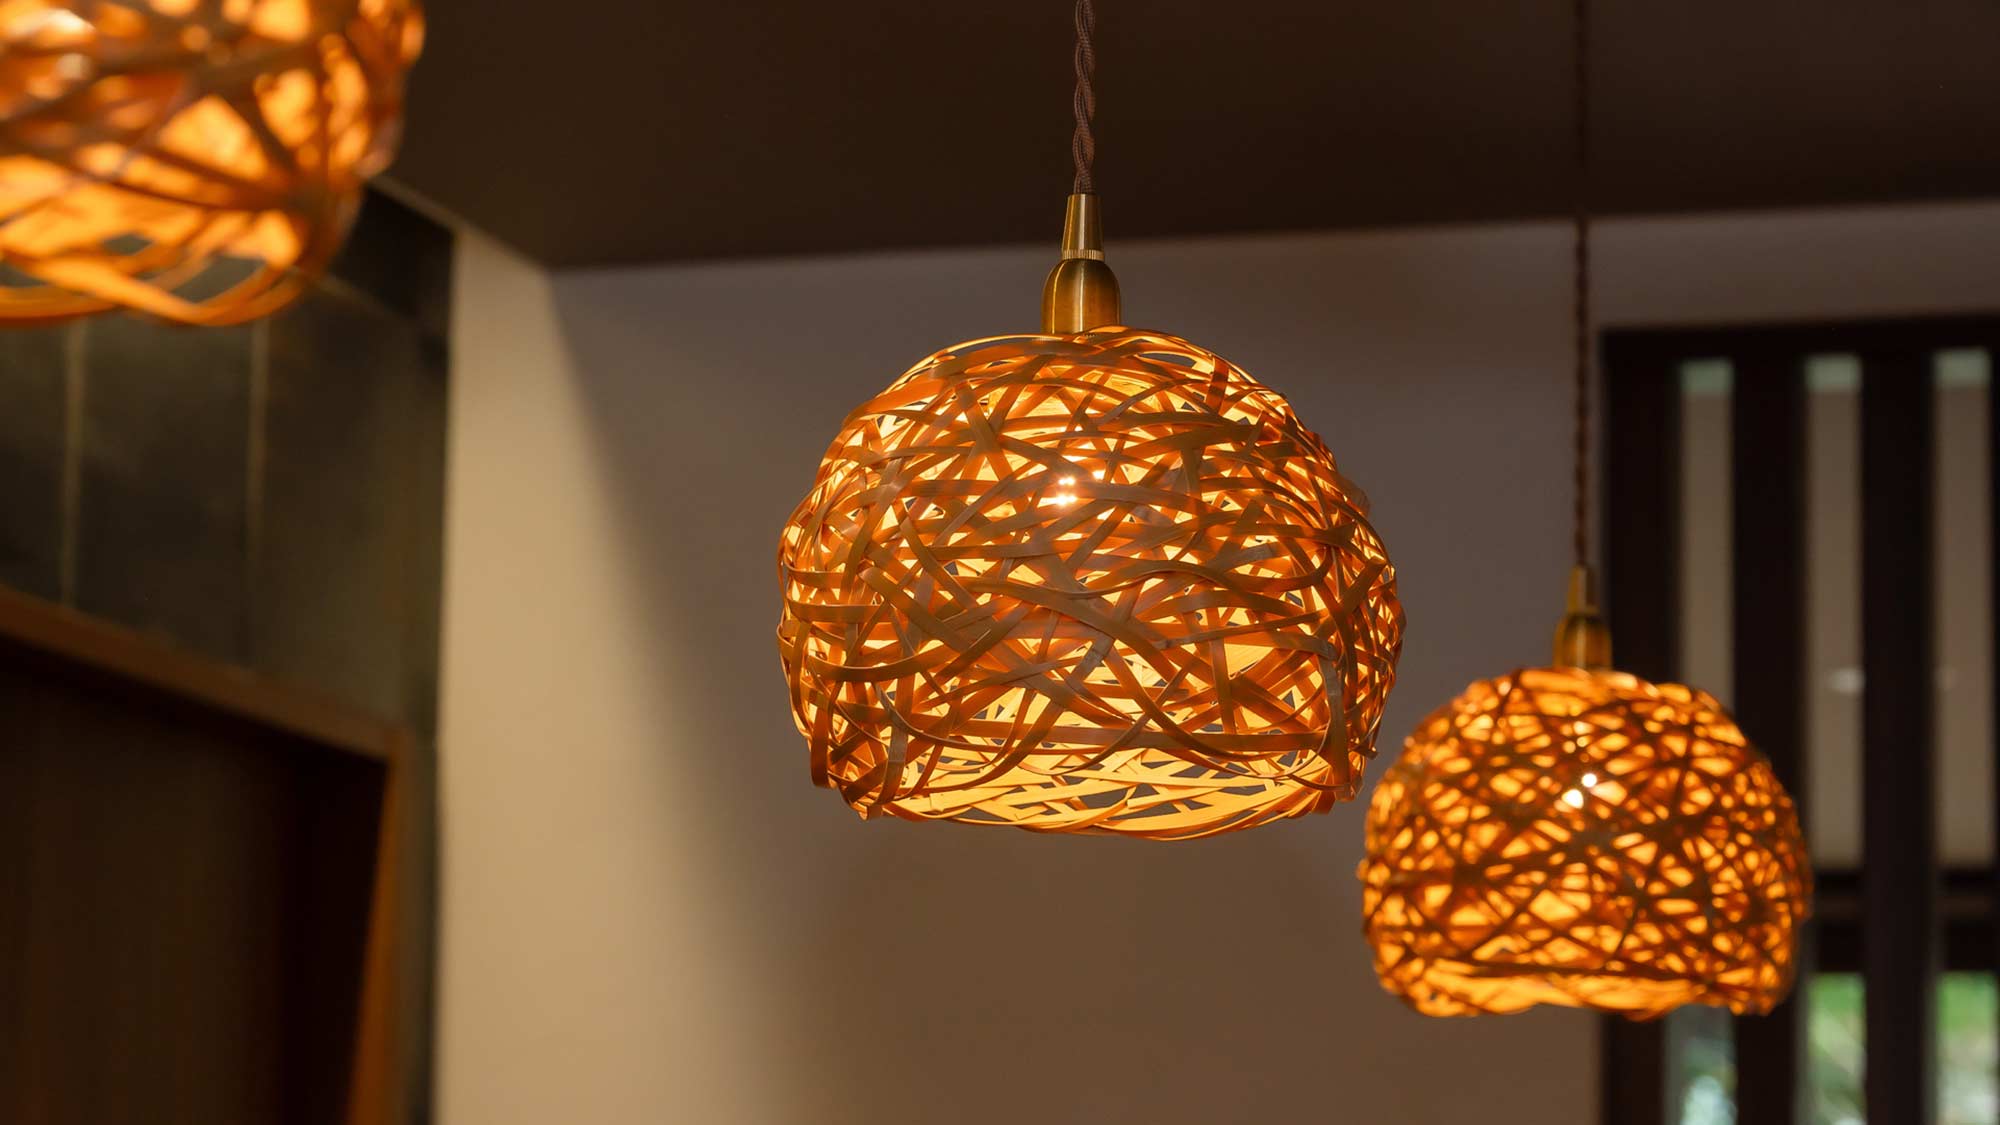 ・【館内照明】『竹工房キコ』の職人が製作した照明が優しく館内を照らします